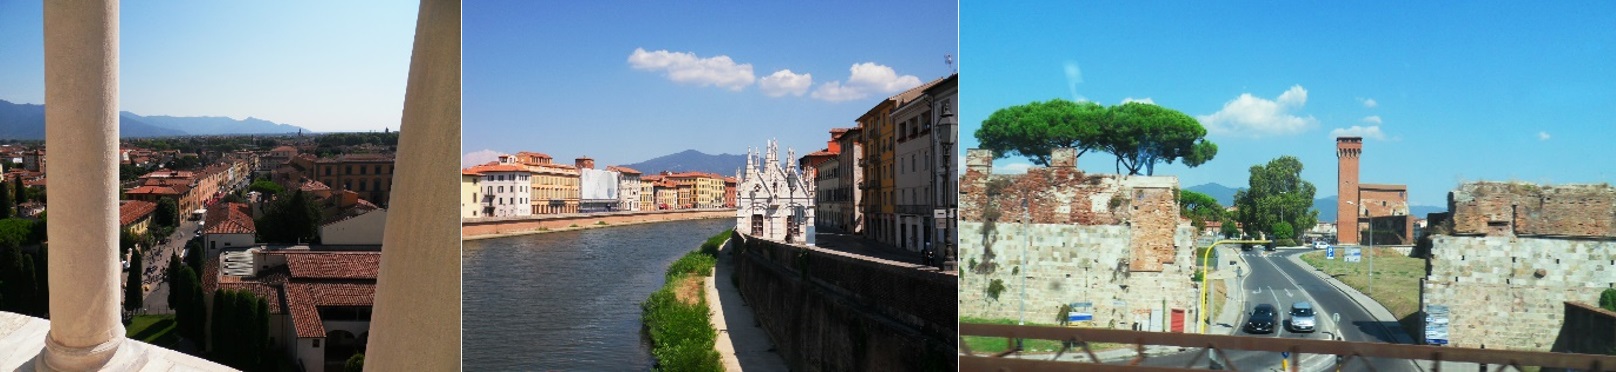 Pisa – Restaurierung und Durchbruch zur Zukunft?